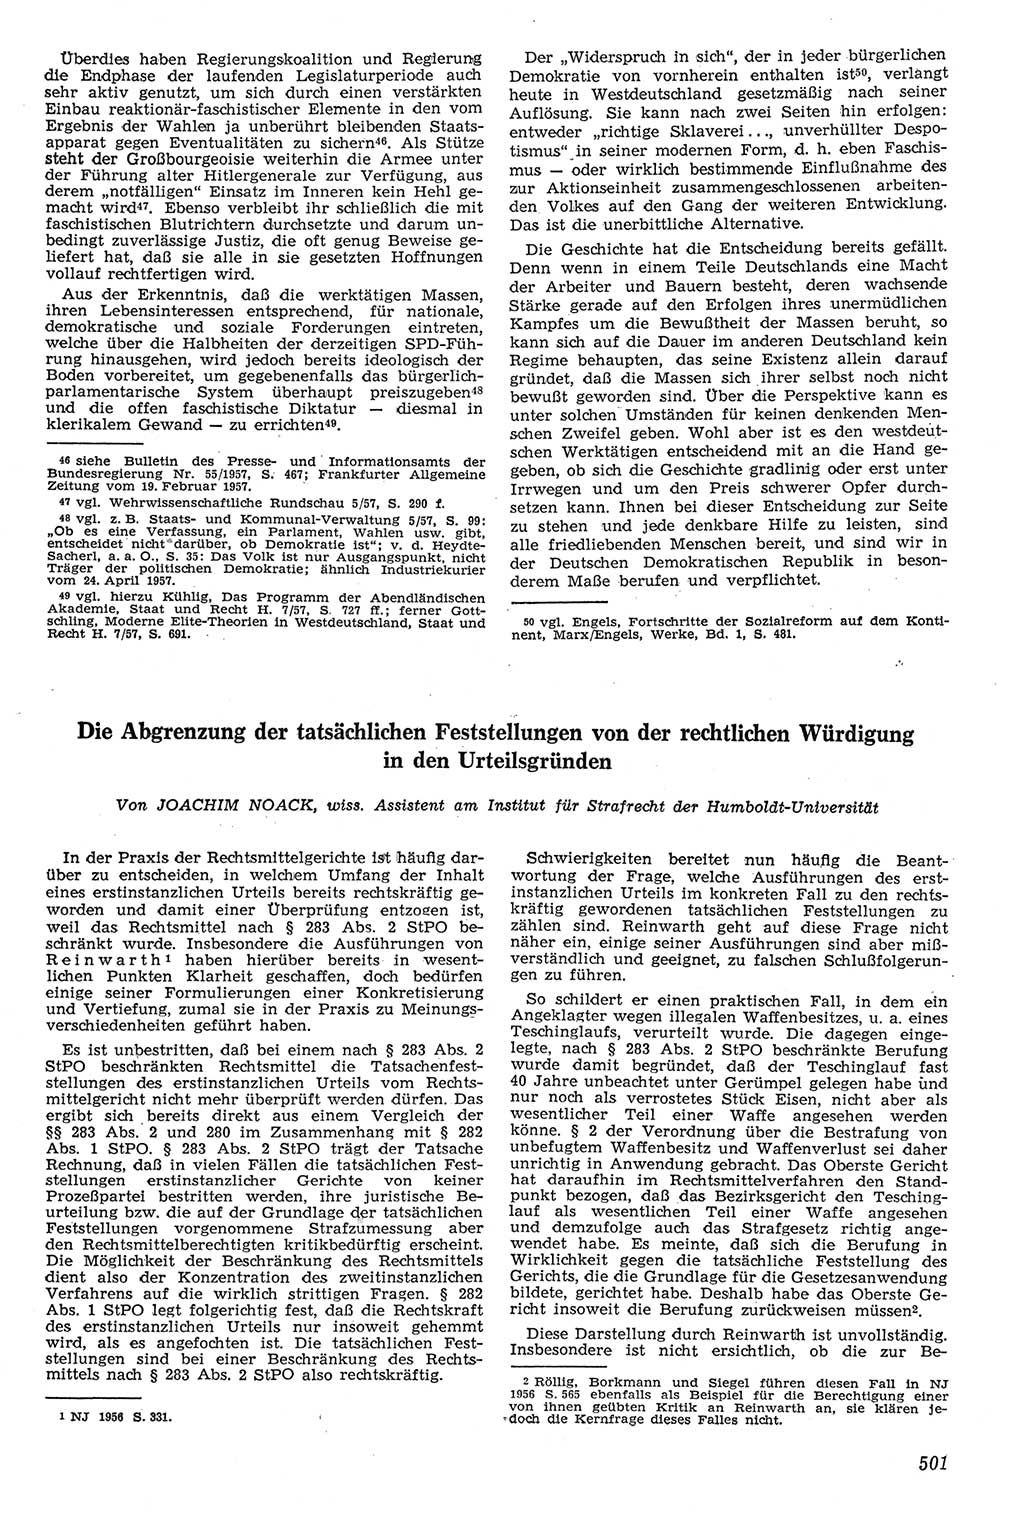 Neue Justiz (NJ), Zeitschrift für Recht und Rechtswissenschaft [Deutsche Demokratische Republik (DDR)], 11. Jahrgang 1957, Seite 501 (NJ DDR 1957, S. 501)